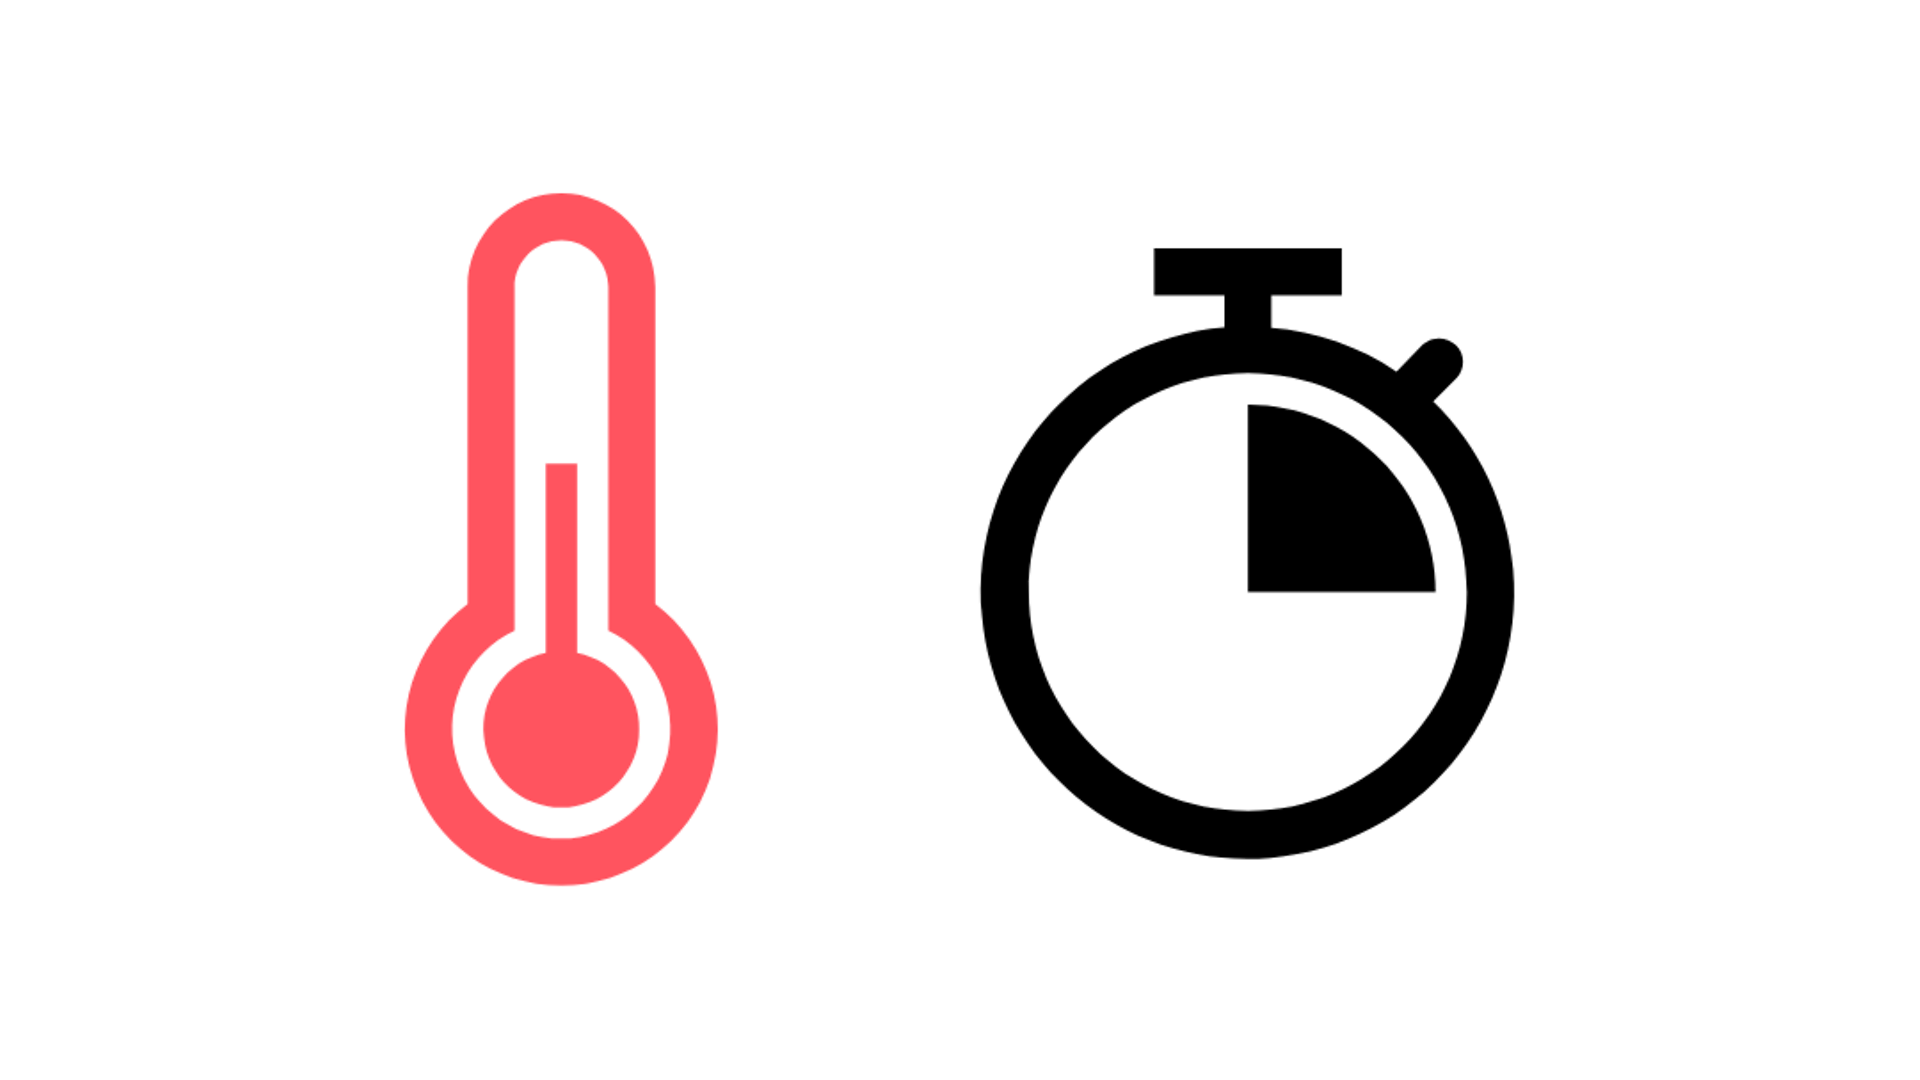 termometre ve saat sembolü için kırmızı sembol, bir saatin çeyreği